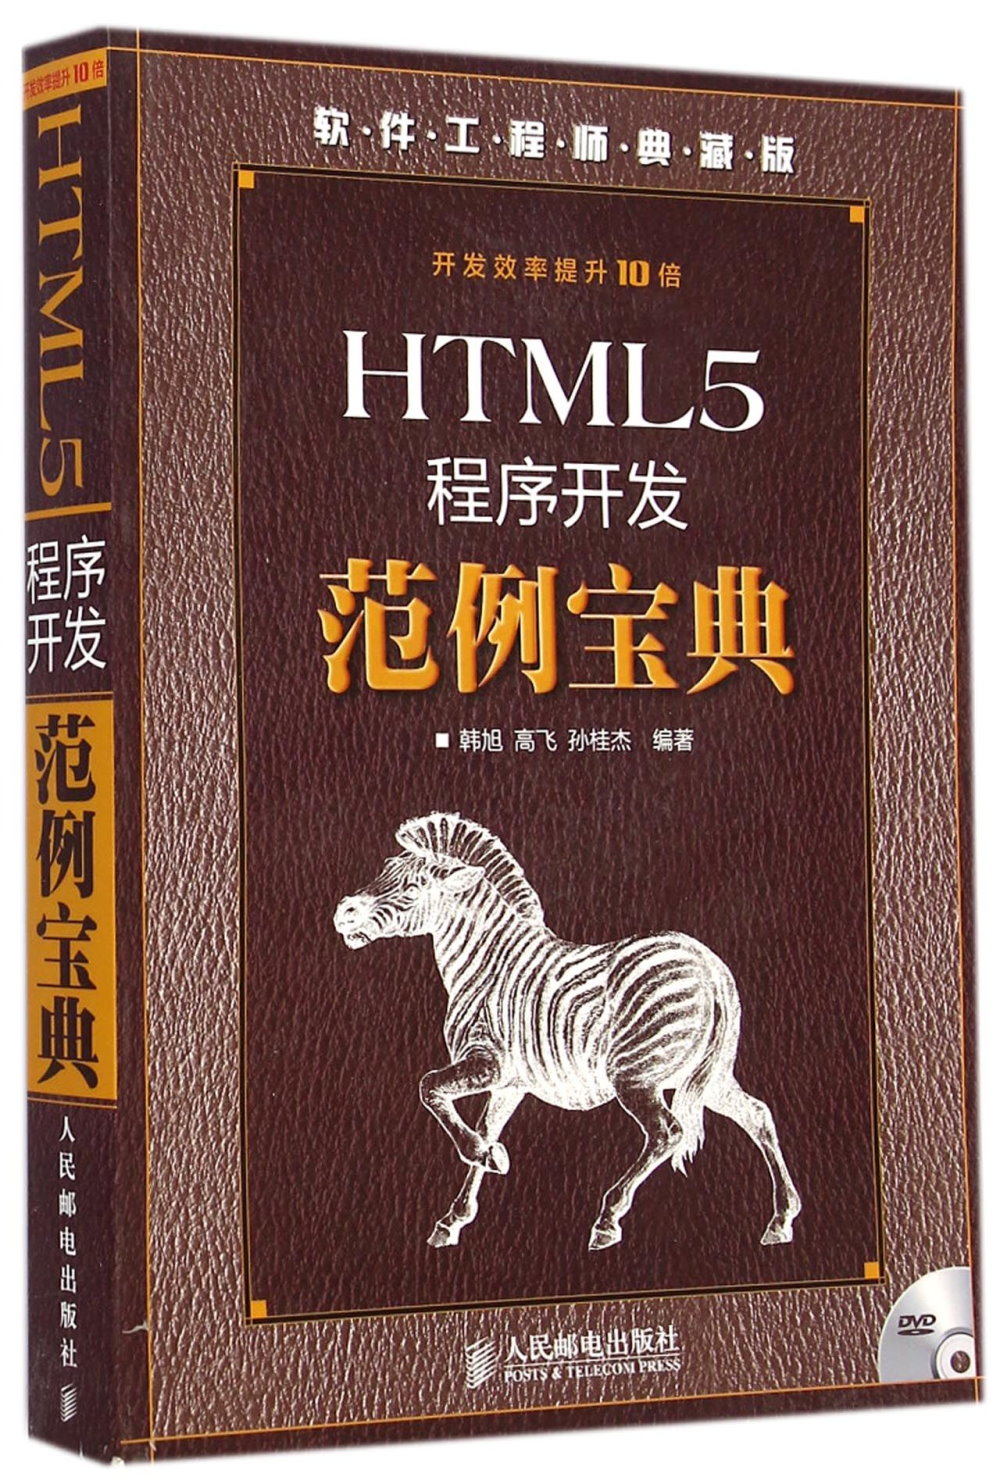 HTML5程序開發范例寶典